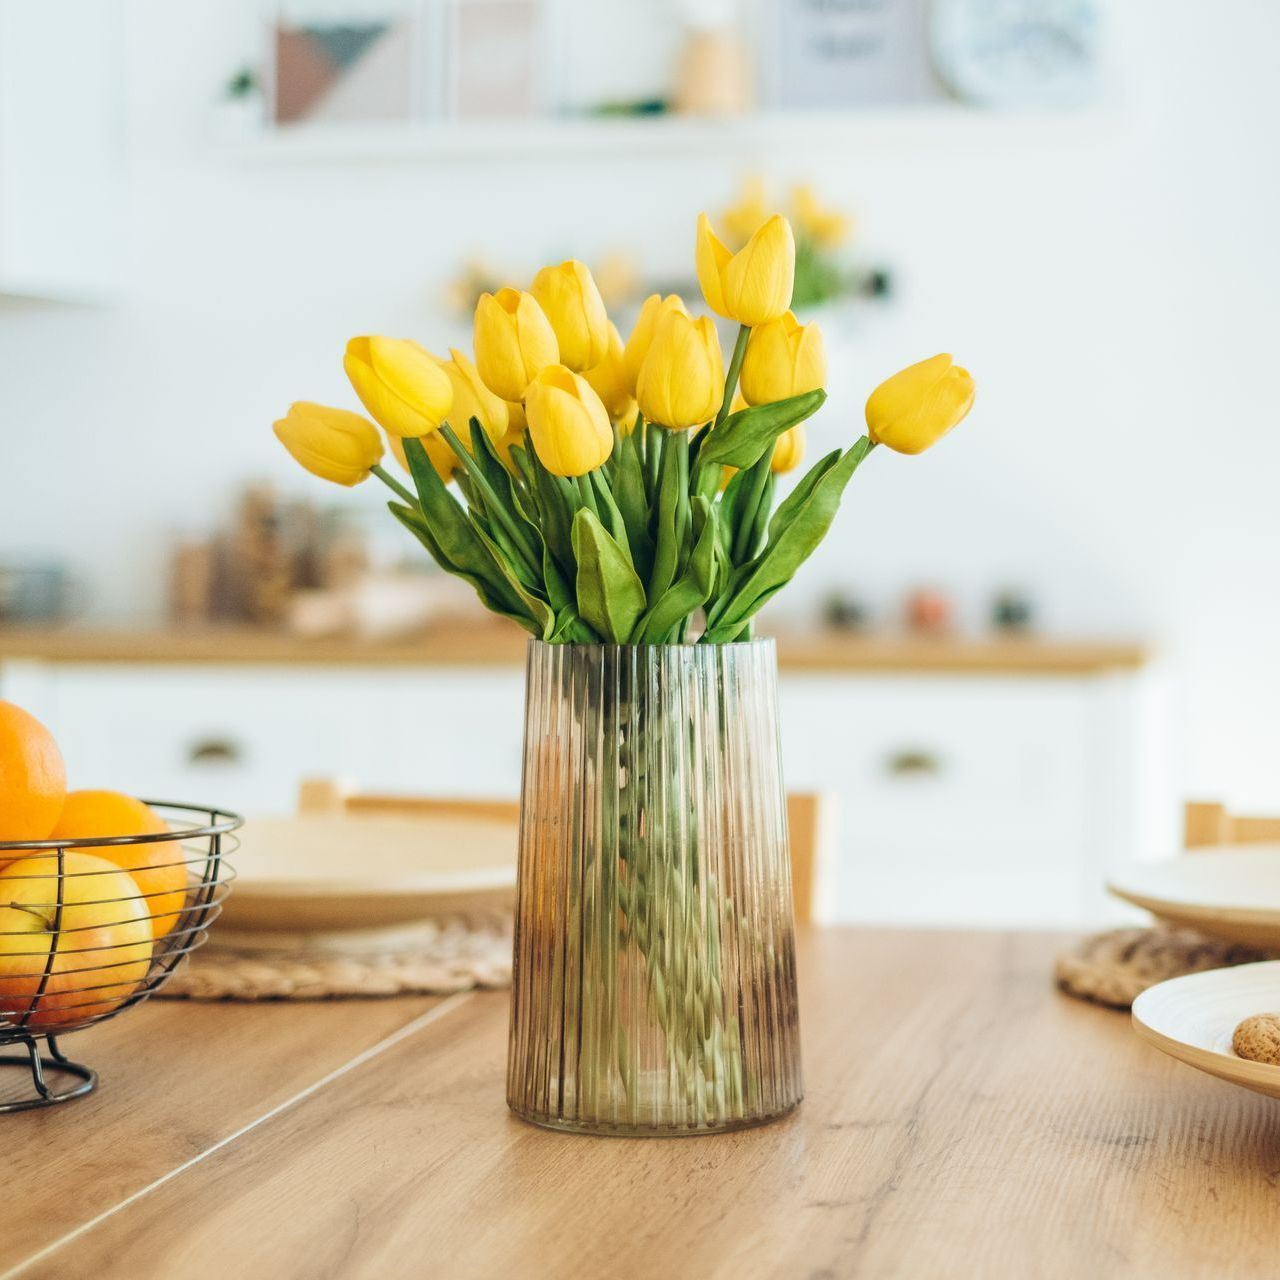 Vase transprent avec des tulipes jaunes